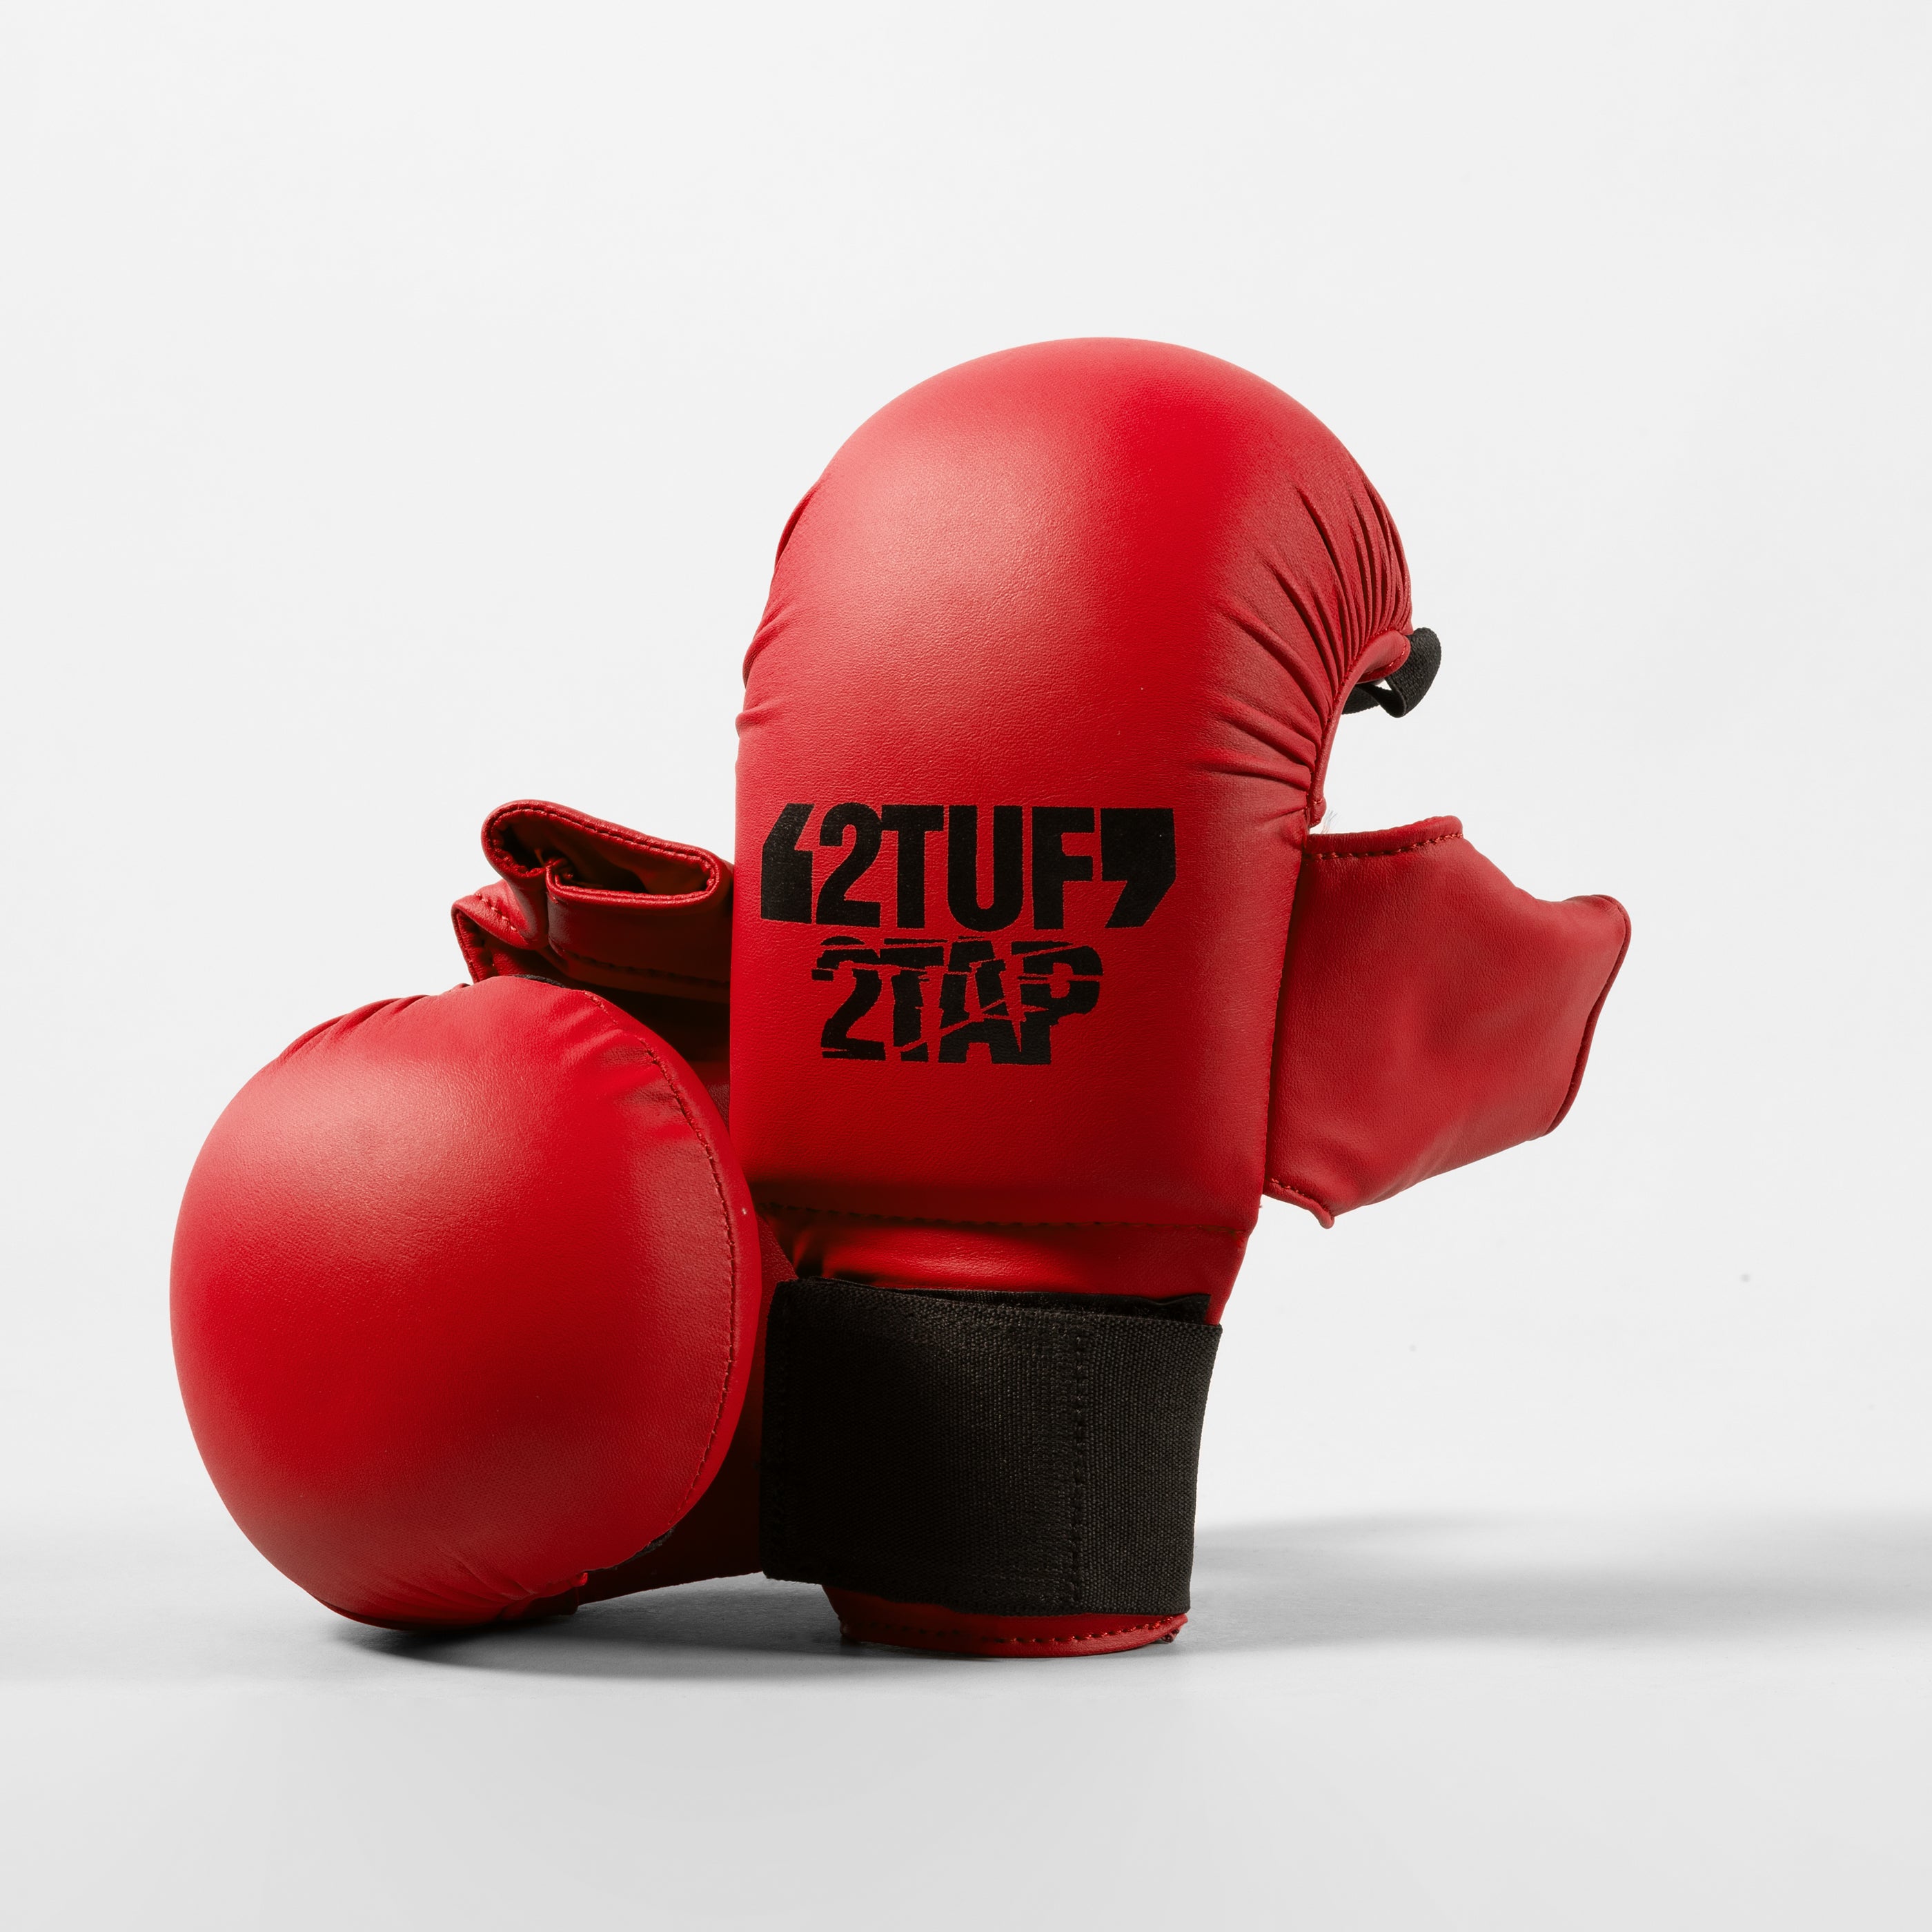 'Anzen' Karate Gloves - Thumb - Red/Black 2TUF2TAP